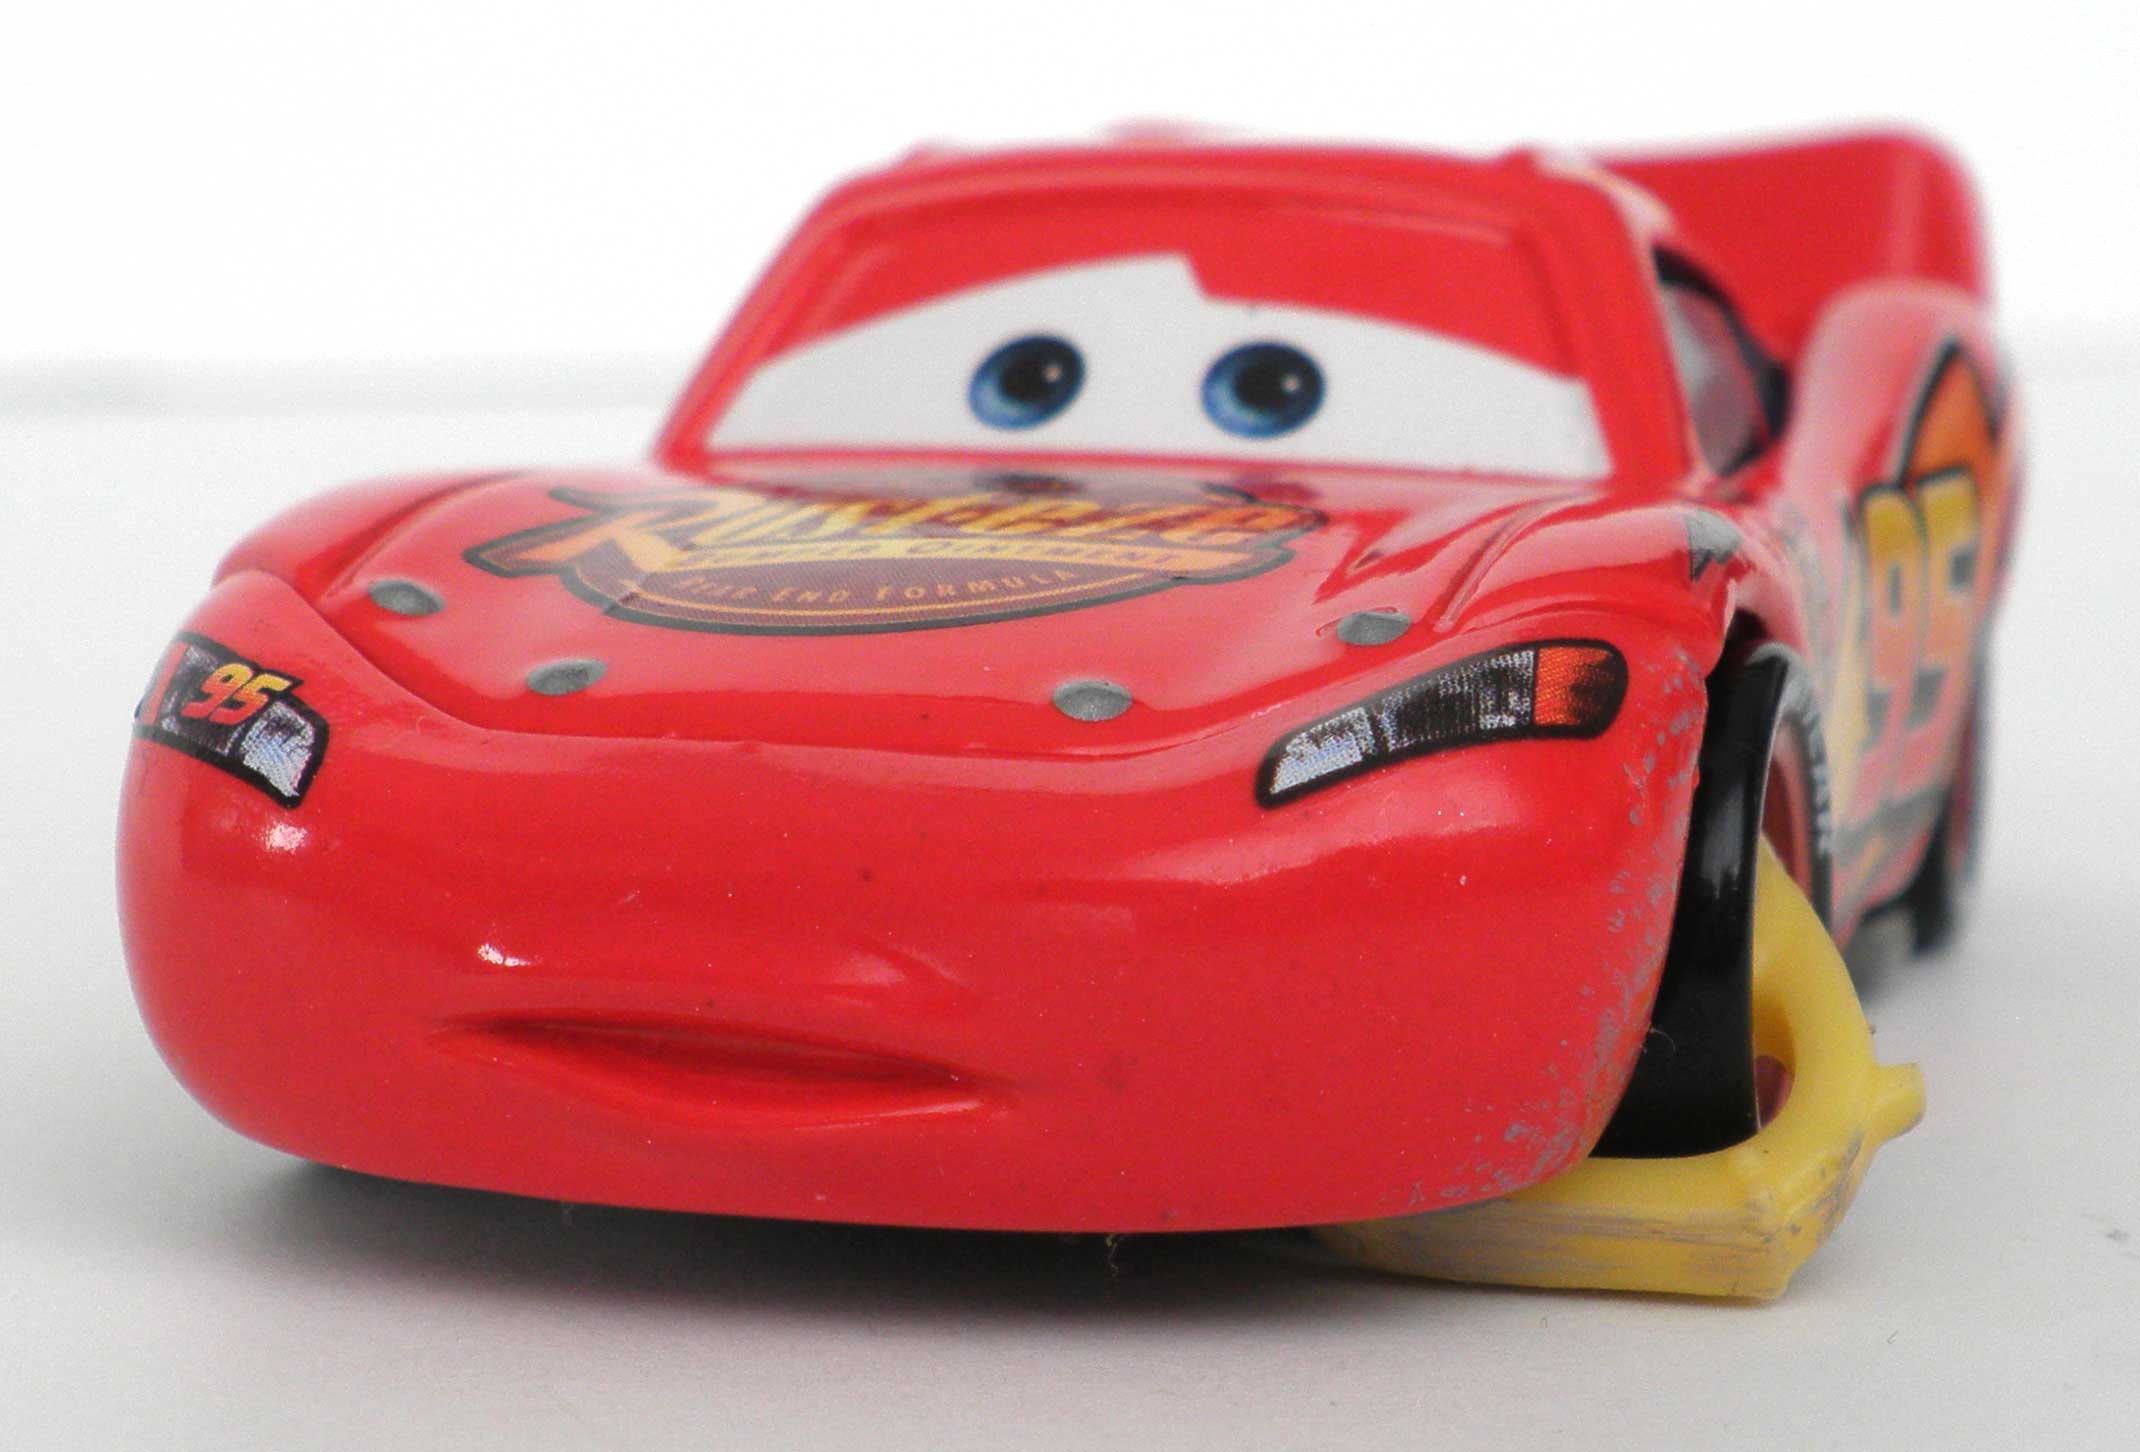 Mattel : Race O Rama - Jaune N°073 - Flash McQueen avec sabot